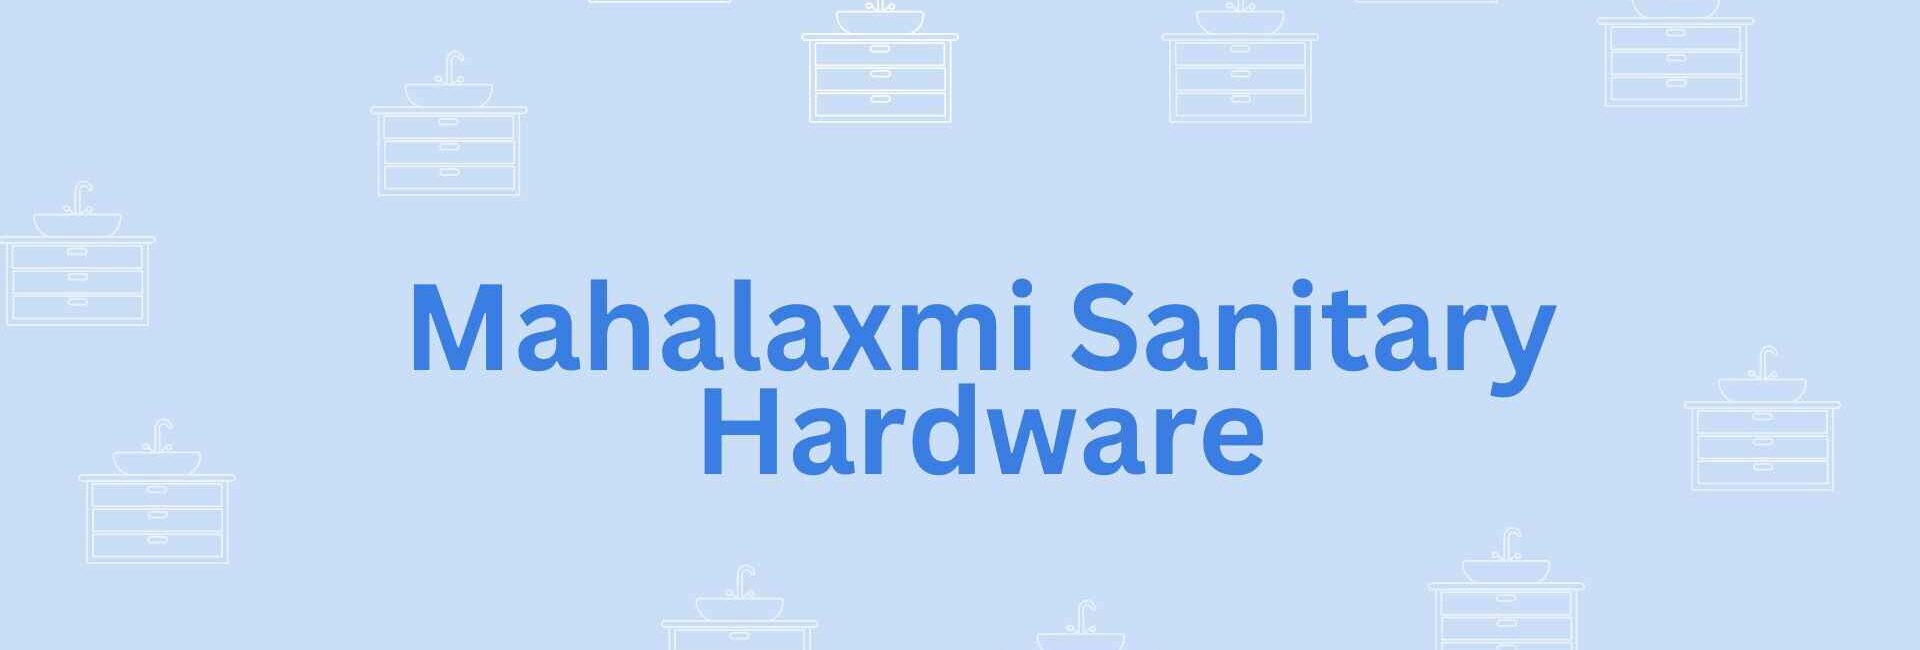 Mahalaxmi Sanitary Hardwares- Sanitary services provider in Noida